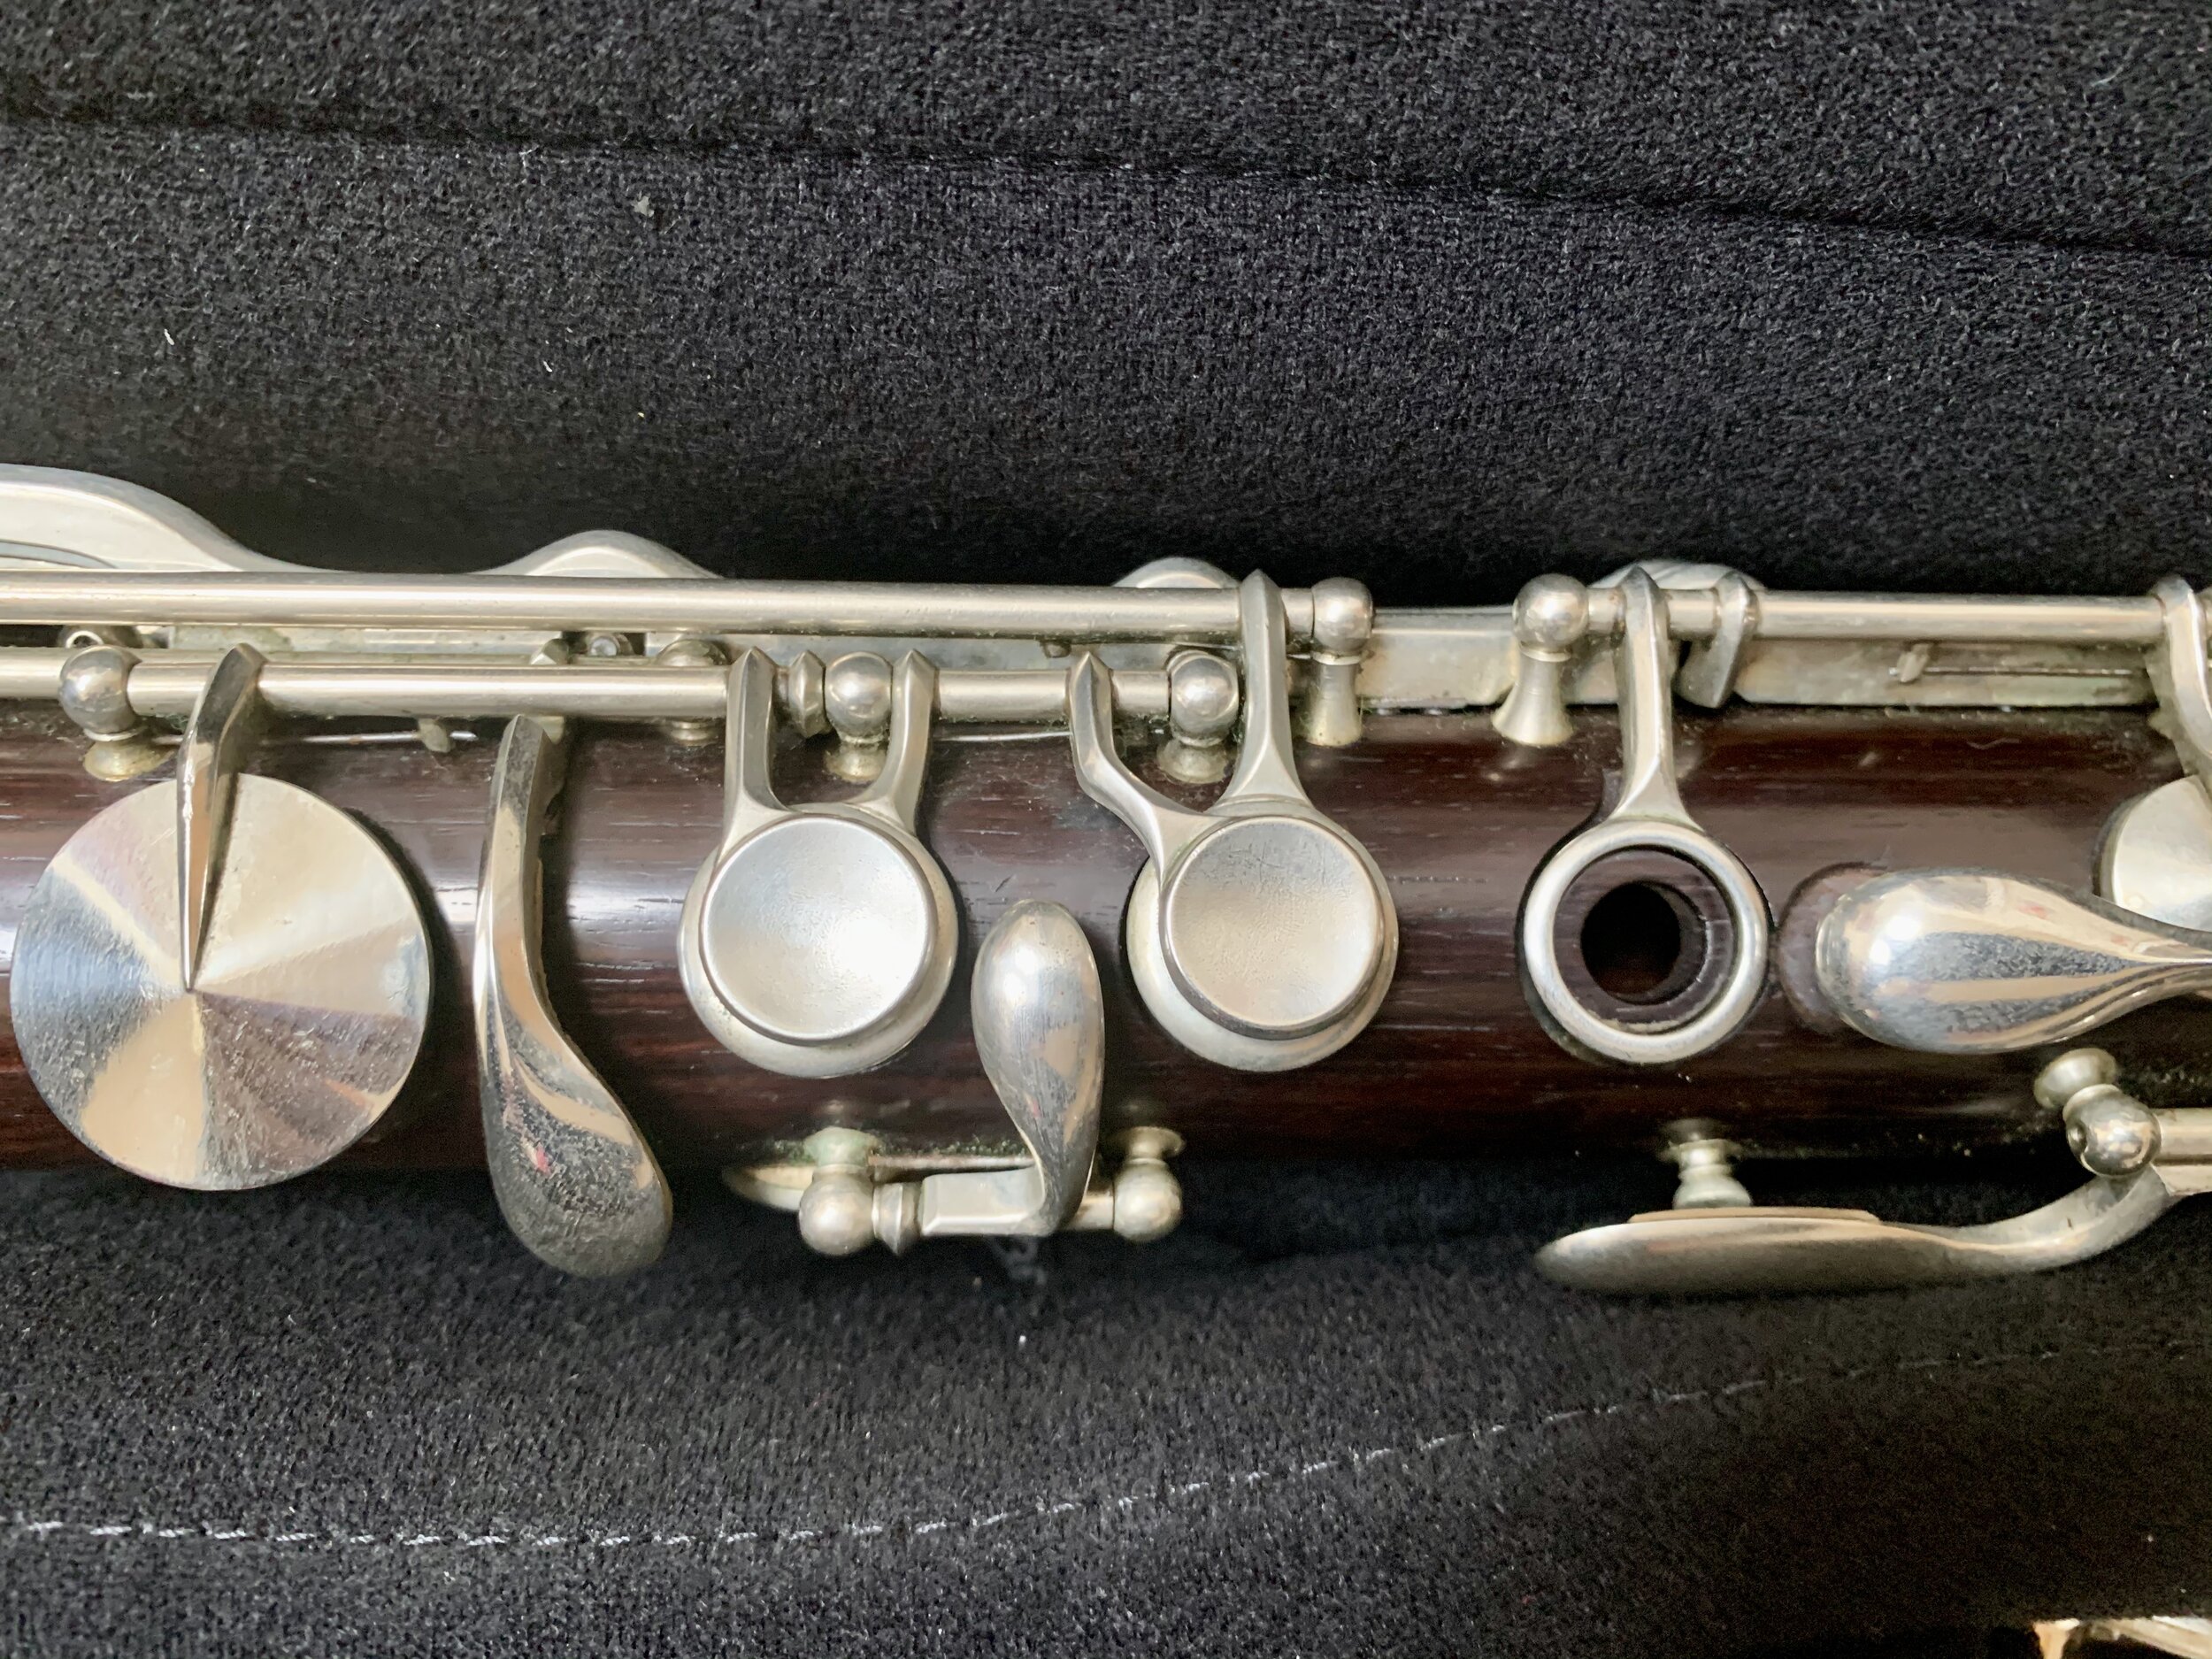 artley flute serial number 199770